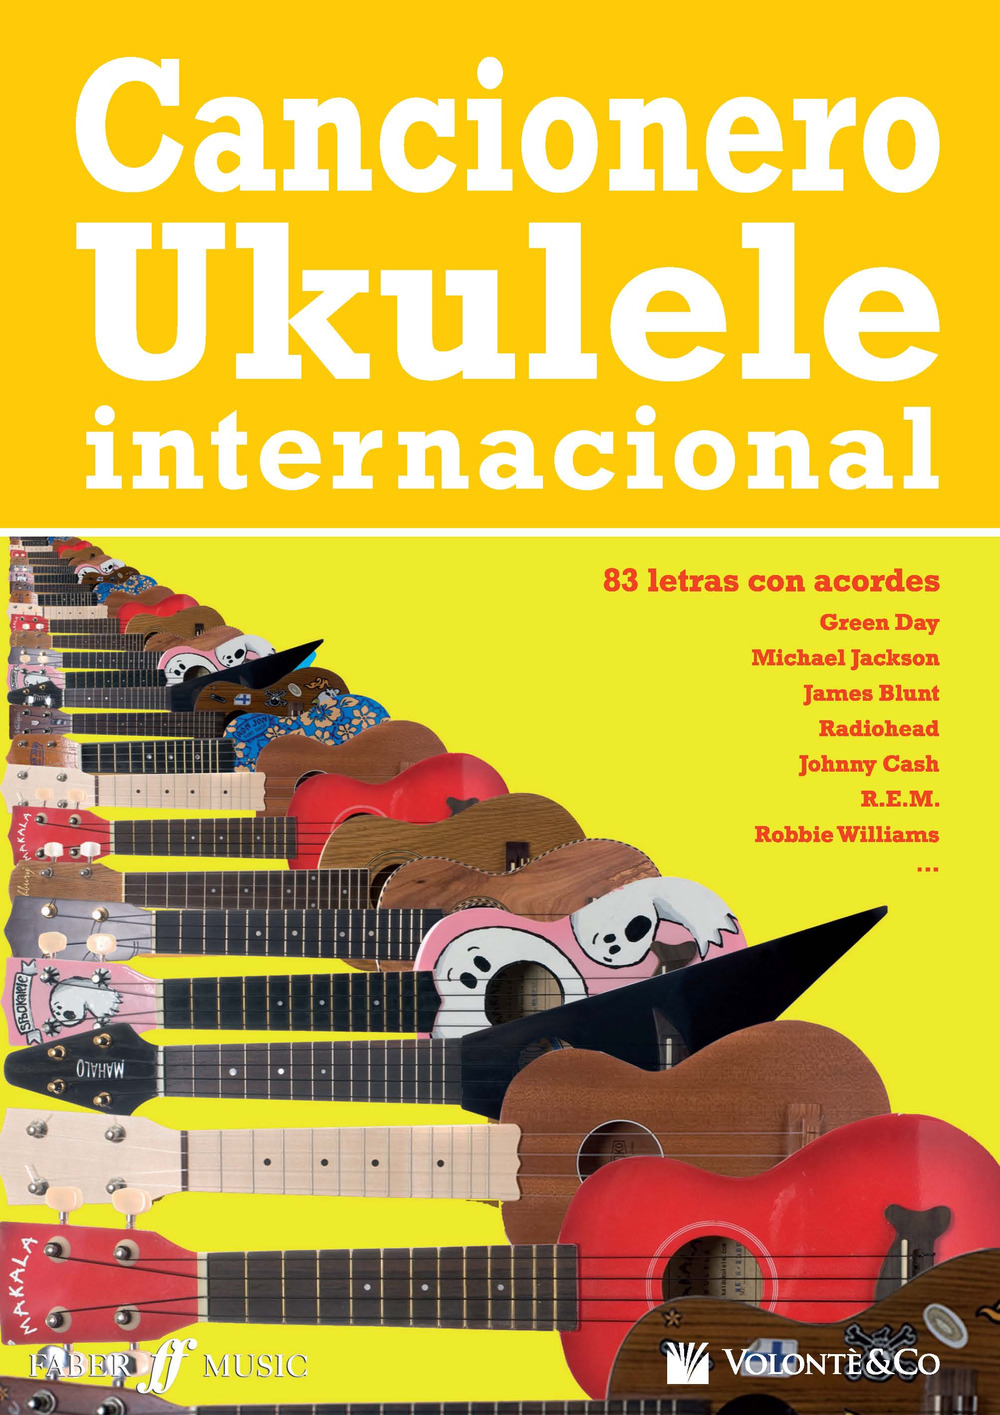 Cancionero ukulele internacional. 83 letras con acordes